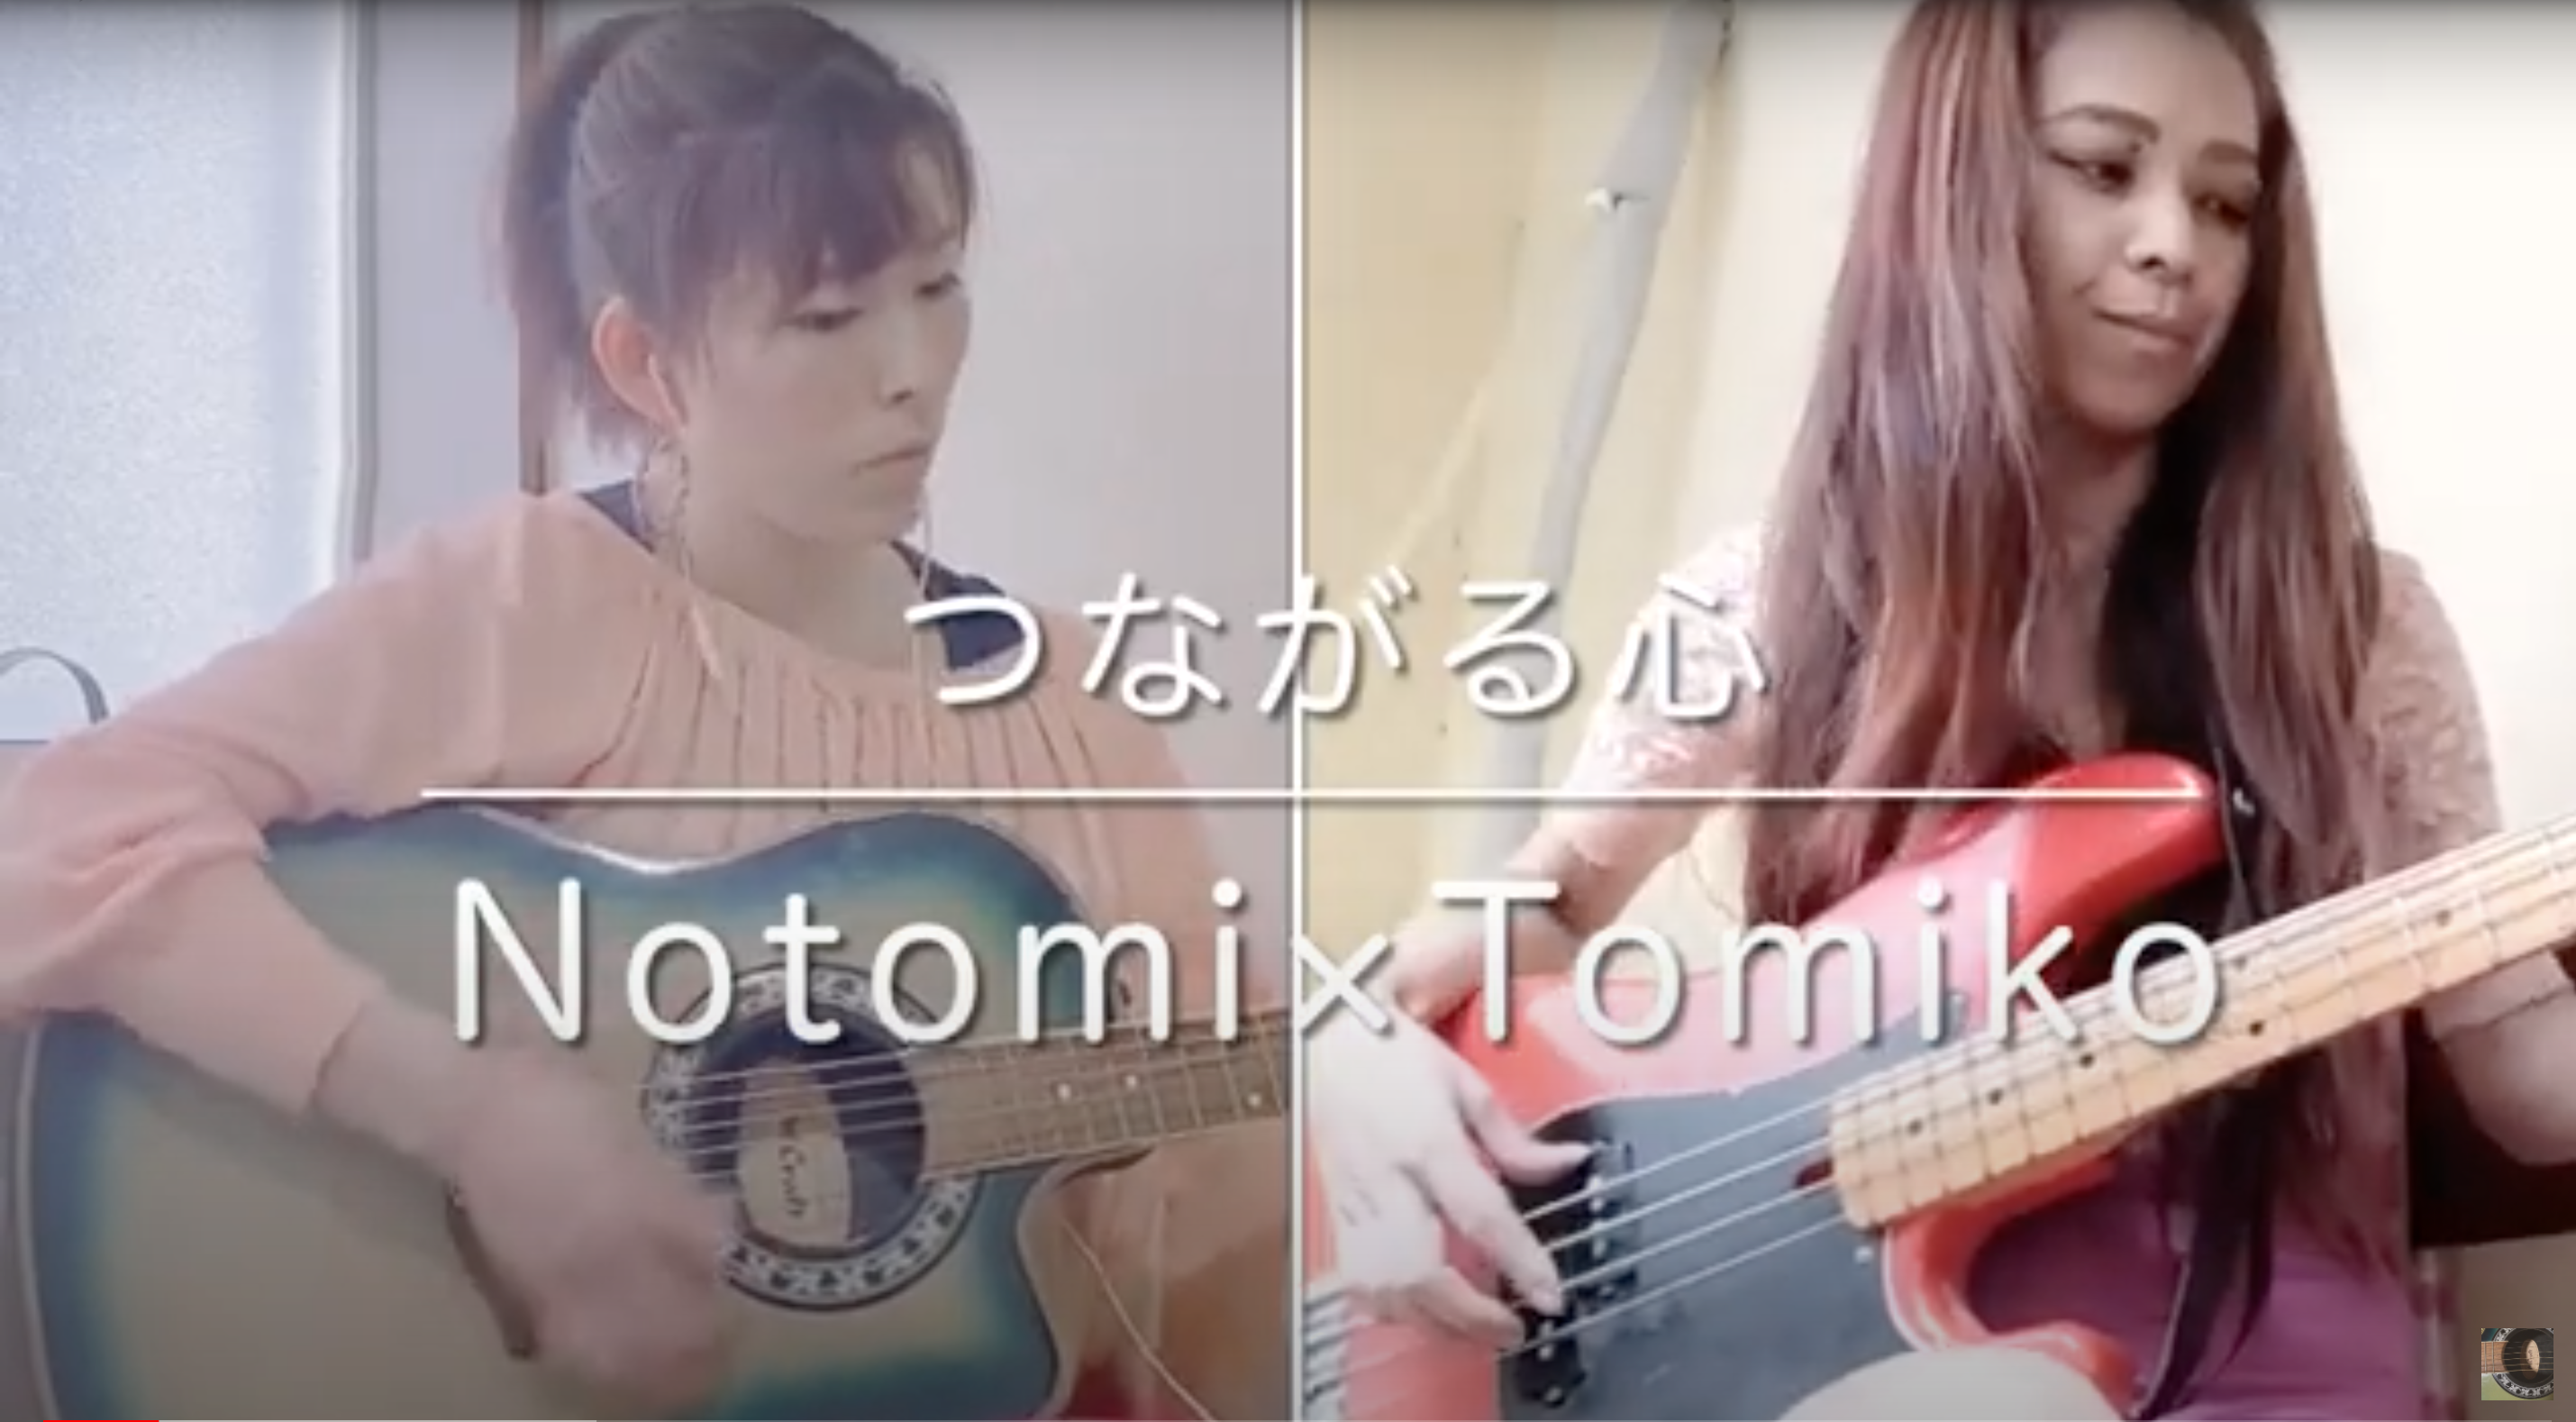 つながる心 – Notomi x Tomiko